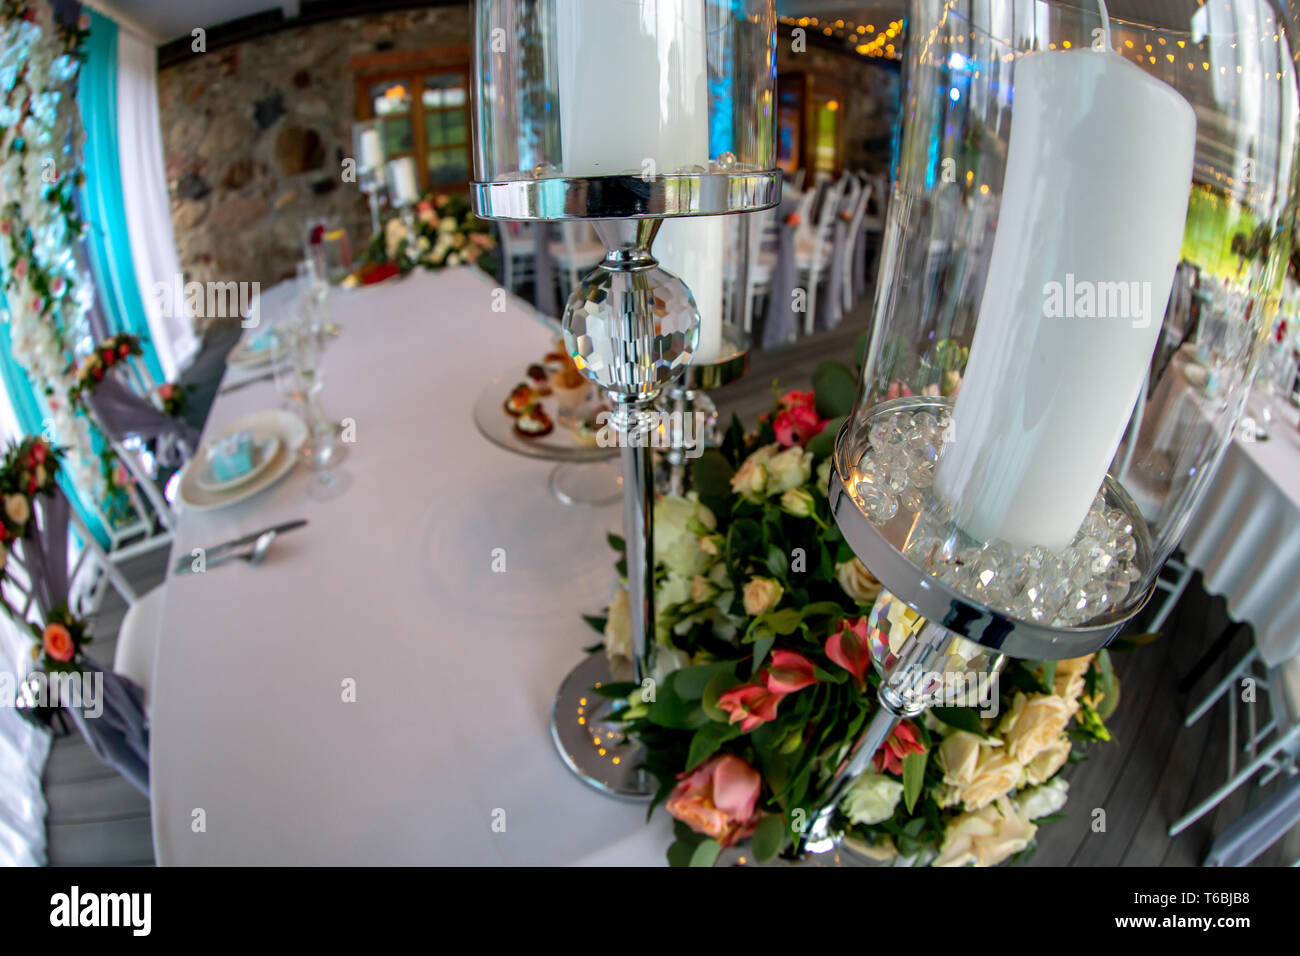 Décor de table pour réception de mariage. Chandelier avec des bougies et de bouquet de fleurs sur la table de mariage avec nappe blanche. Tourné avec des poissons Banque D'Images